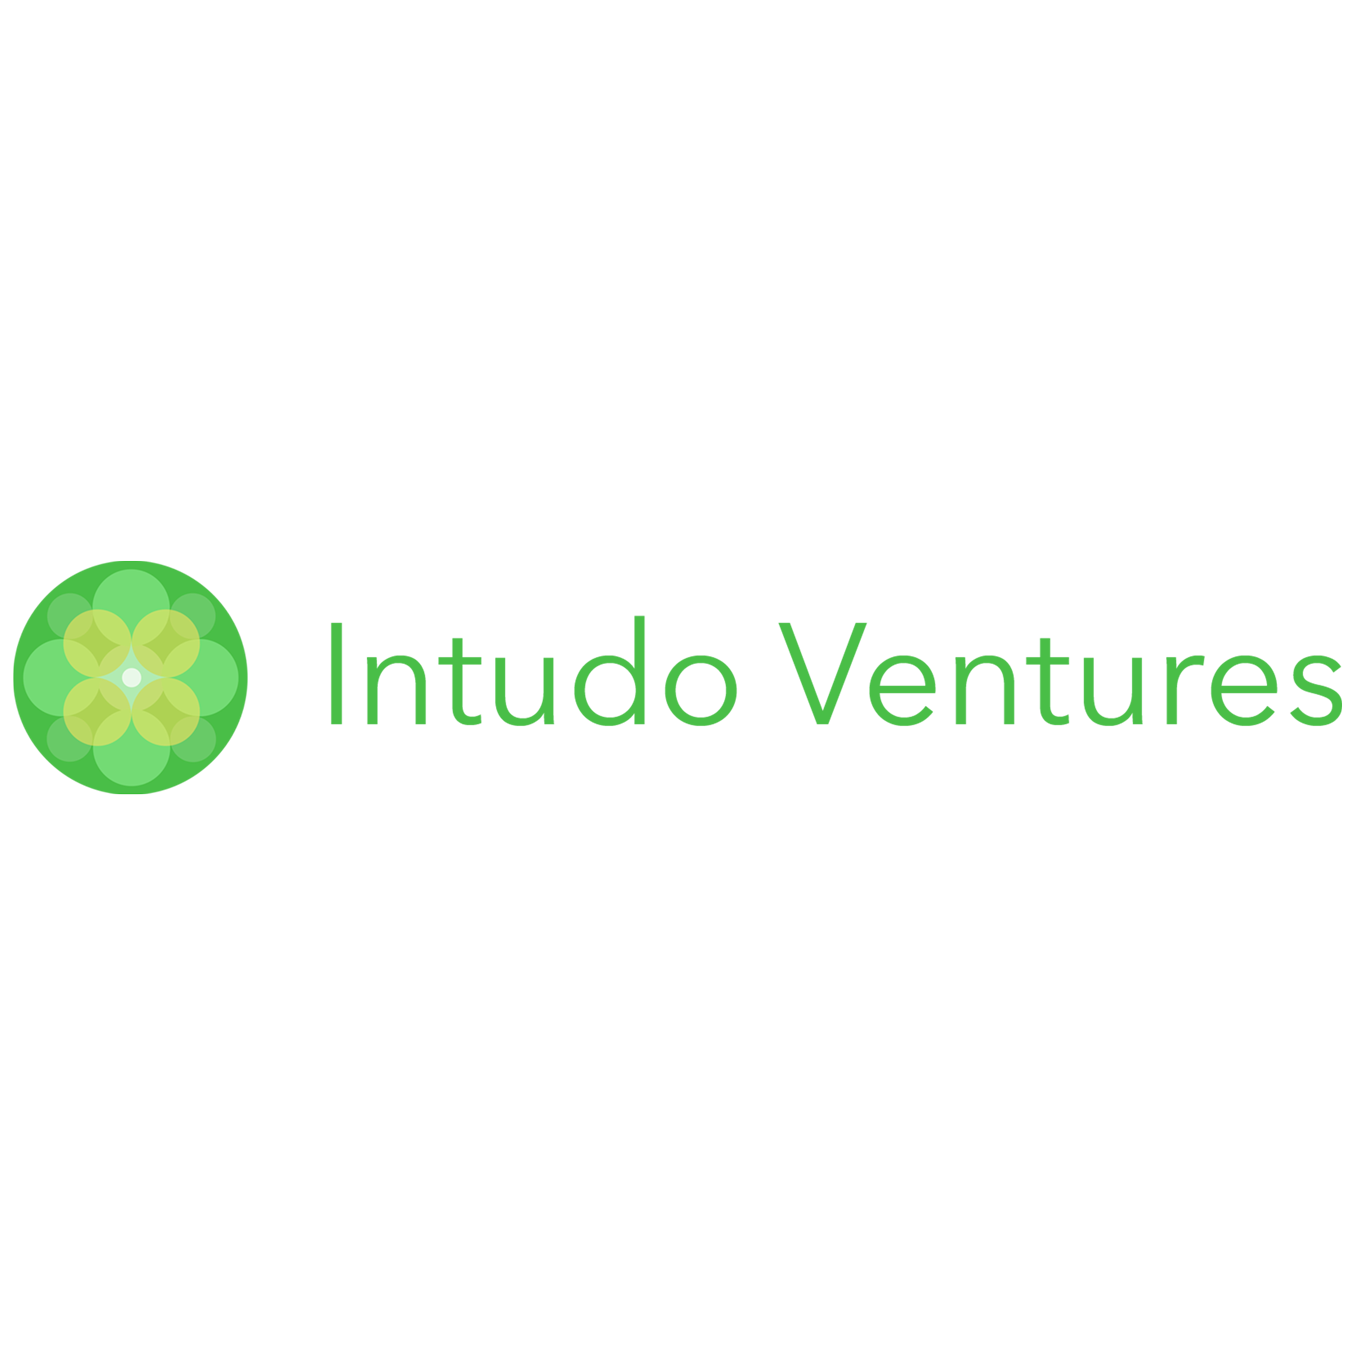 Intudo Ventures logo